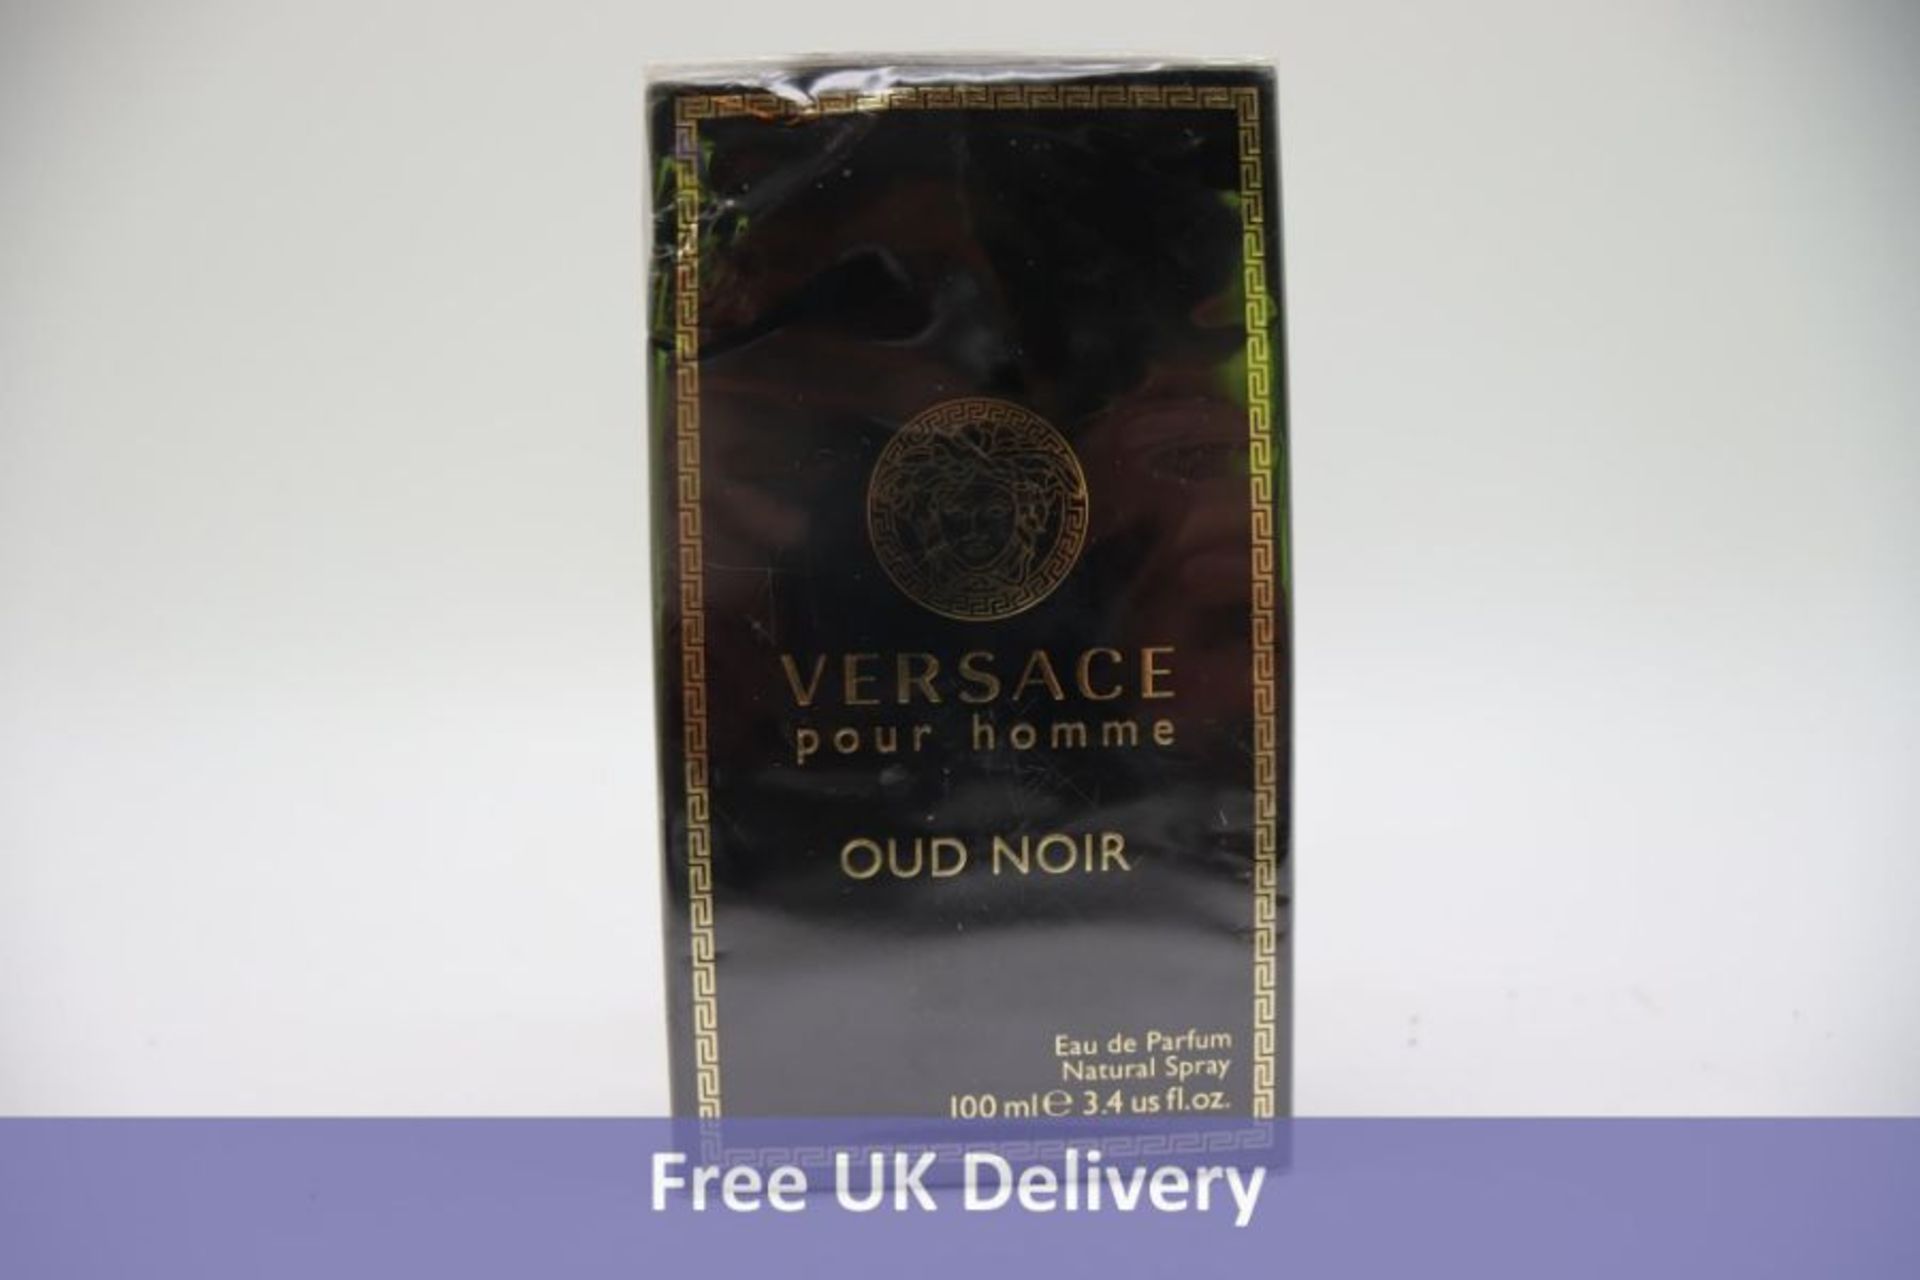 Versace Pour Homme Oud Noir, 100ml Eau de Parfum Spray